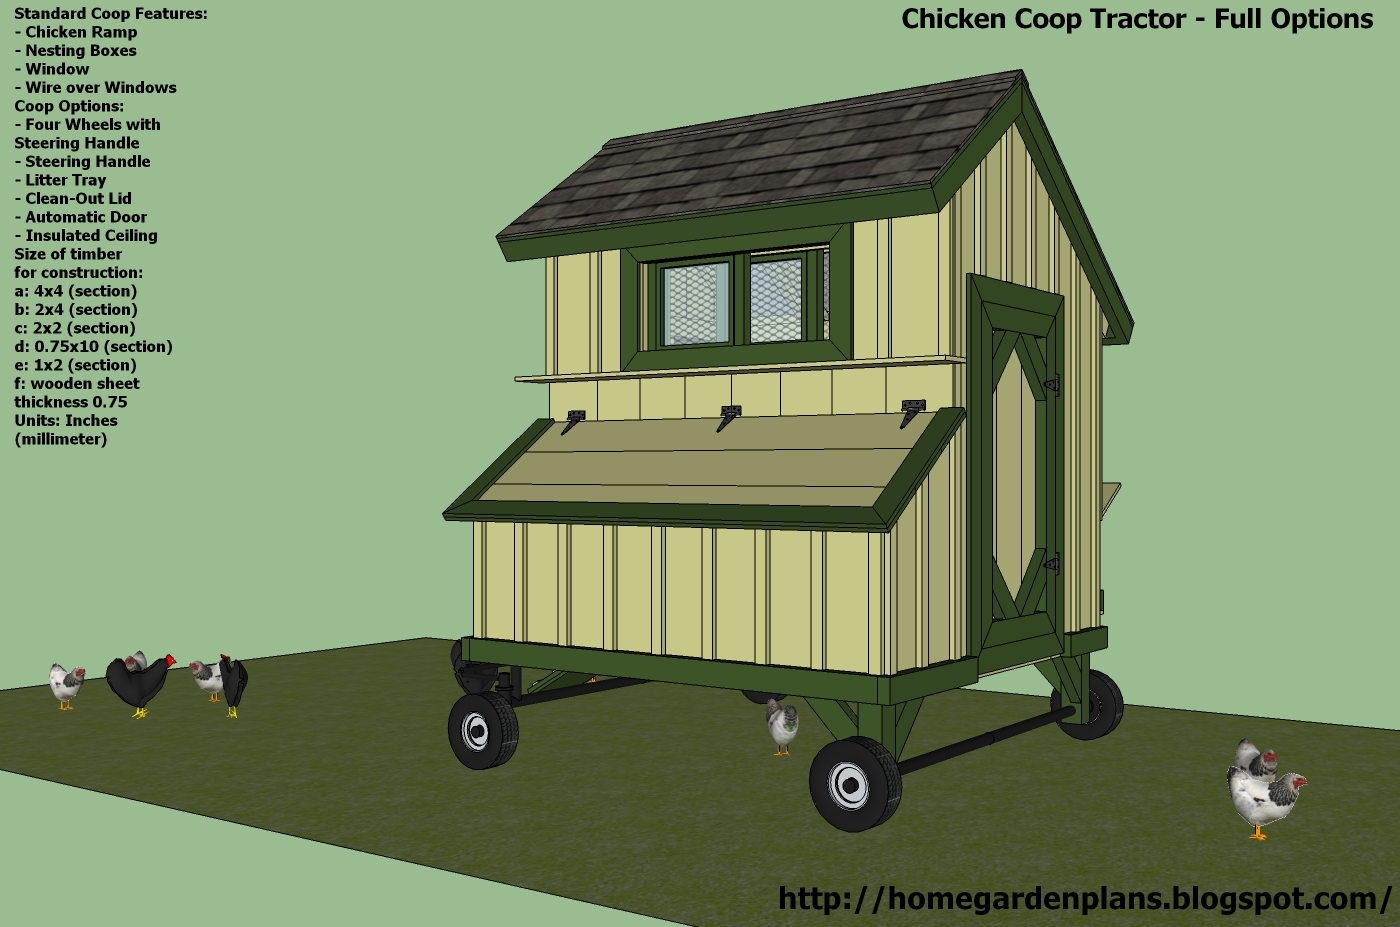 Mobile Chicken Coop Plans T200 - chicken coop tractor